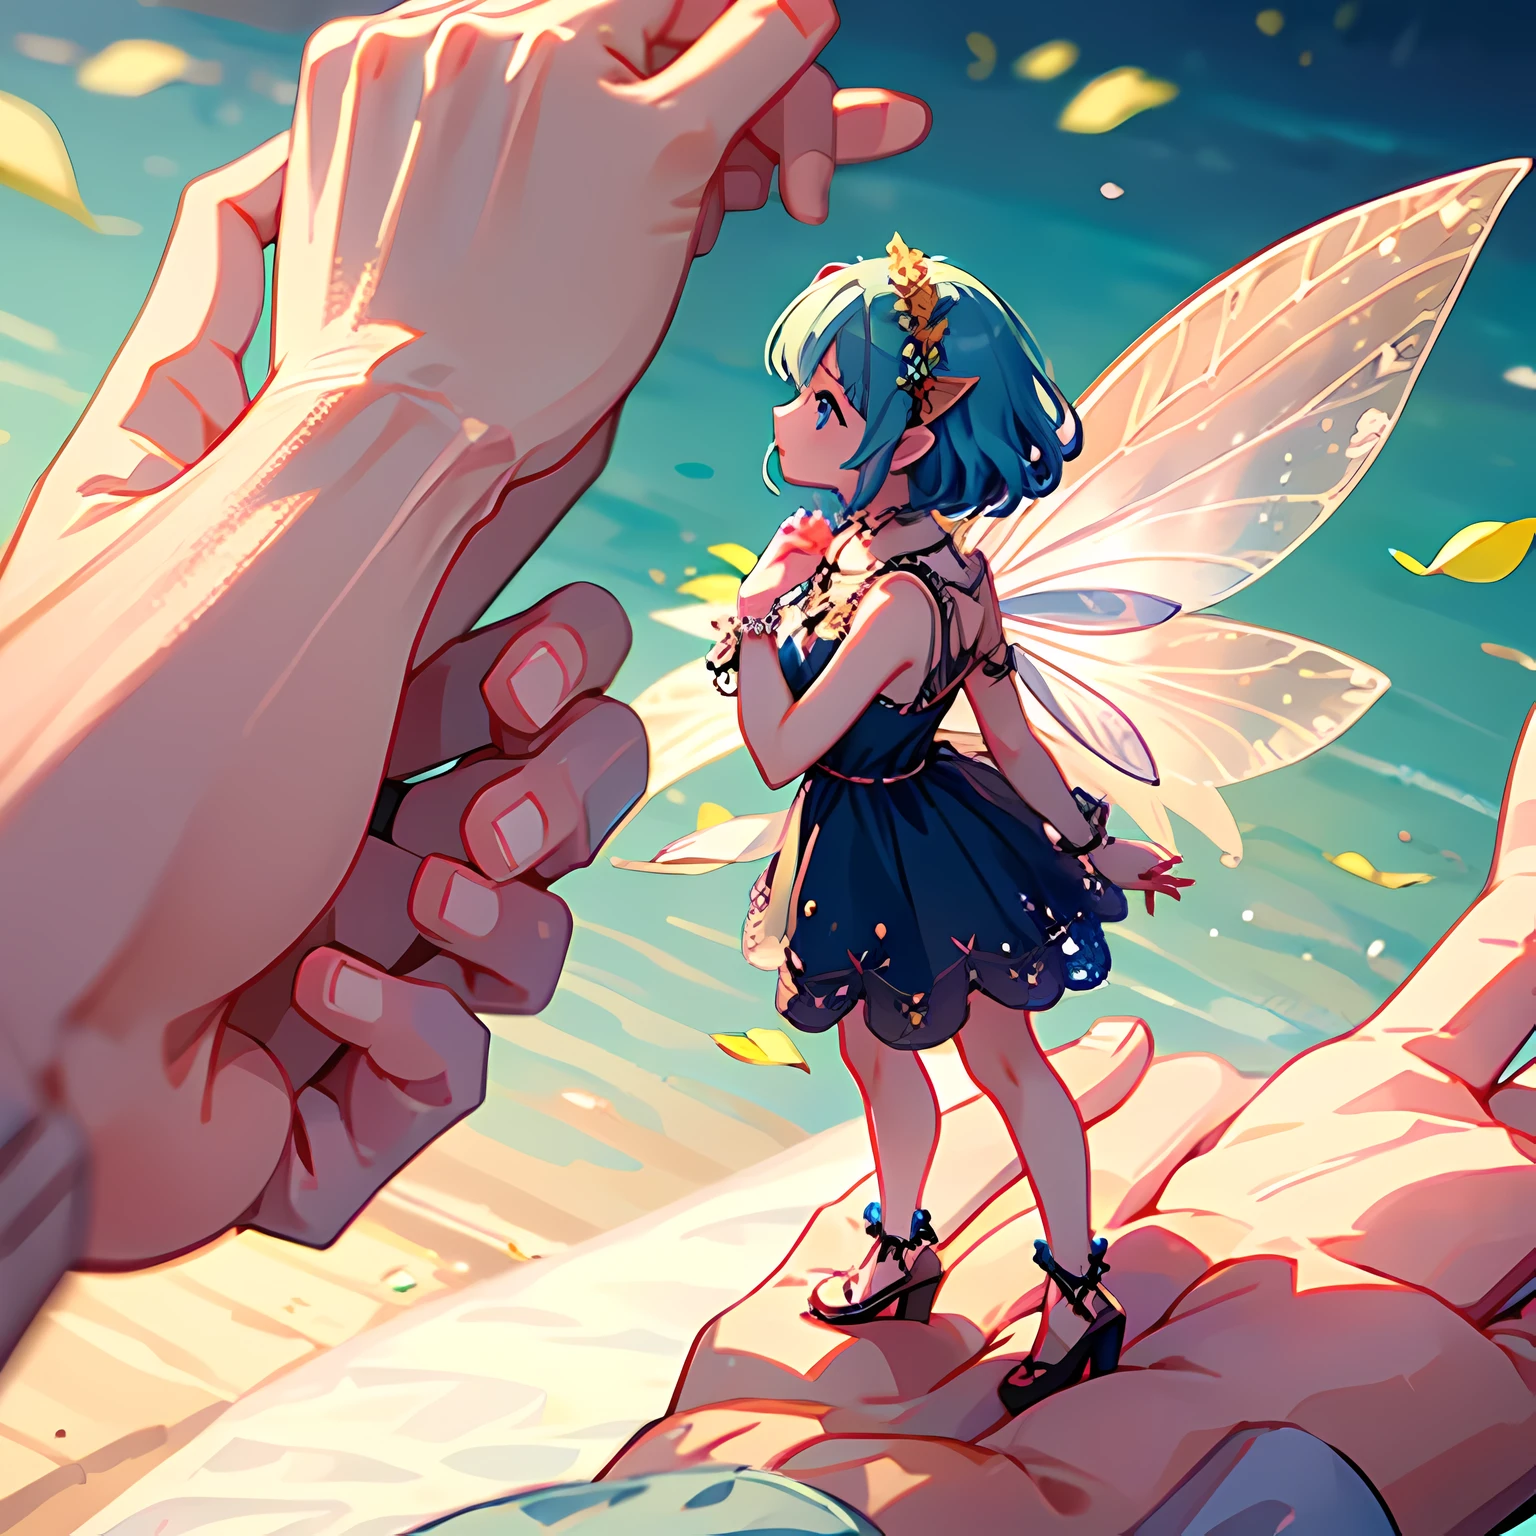 인간 소녀의 손바닥 위에 서 있는 작은 요정 소녀. 요정의 작은 예쁜 날개.